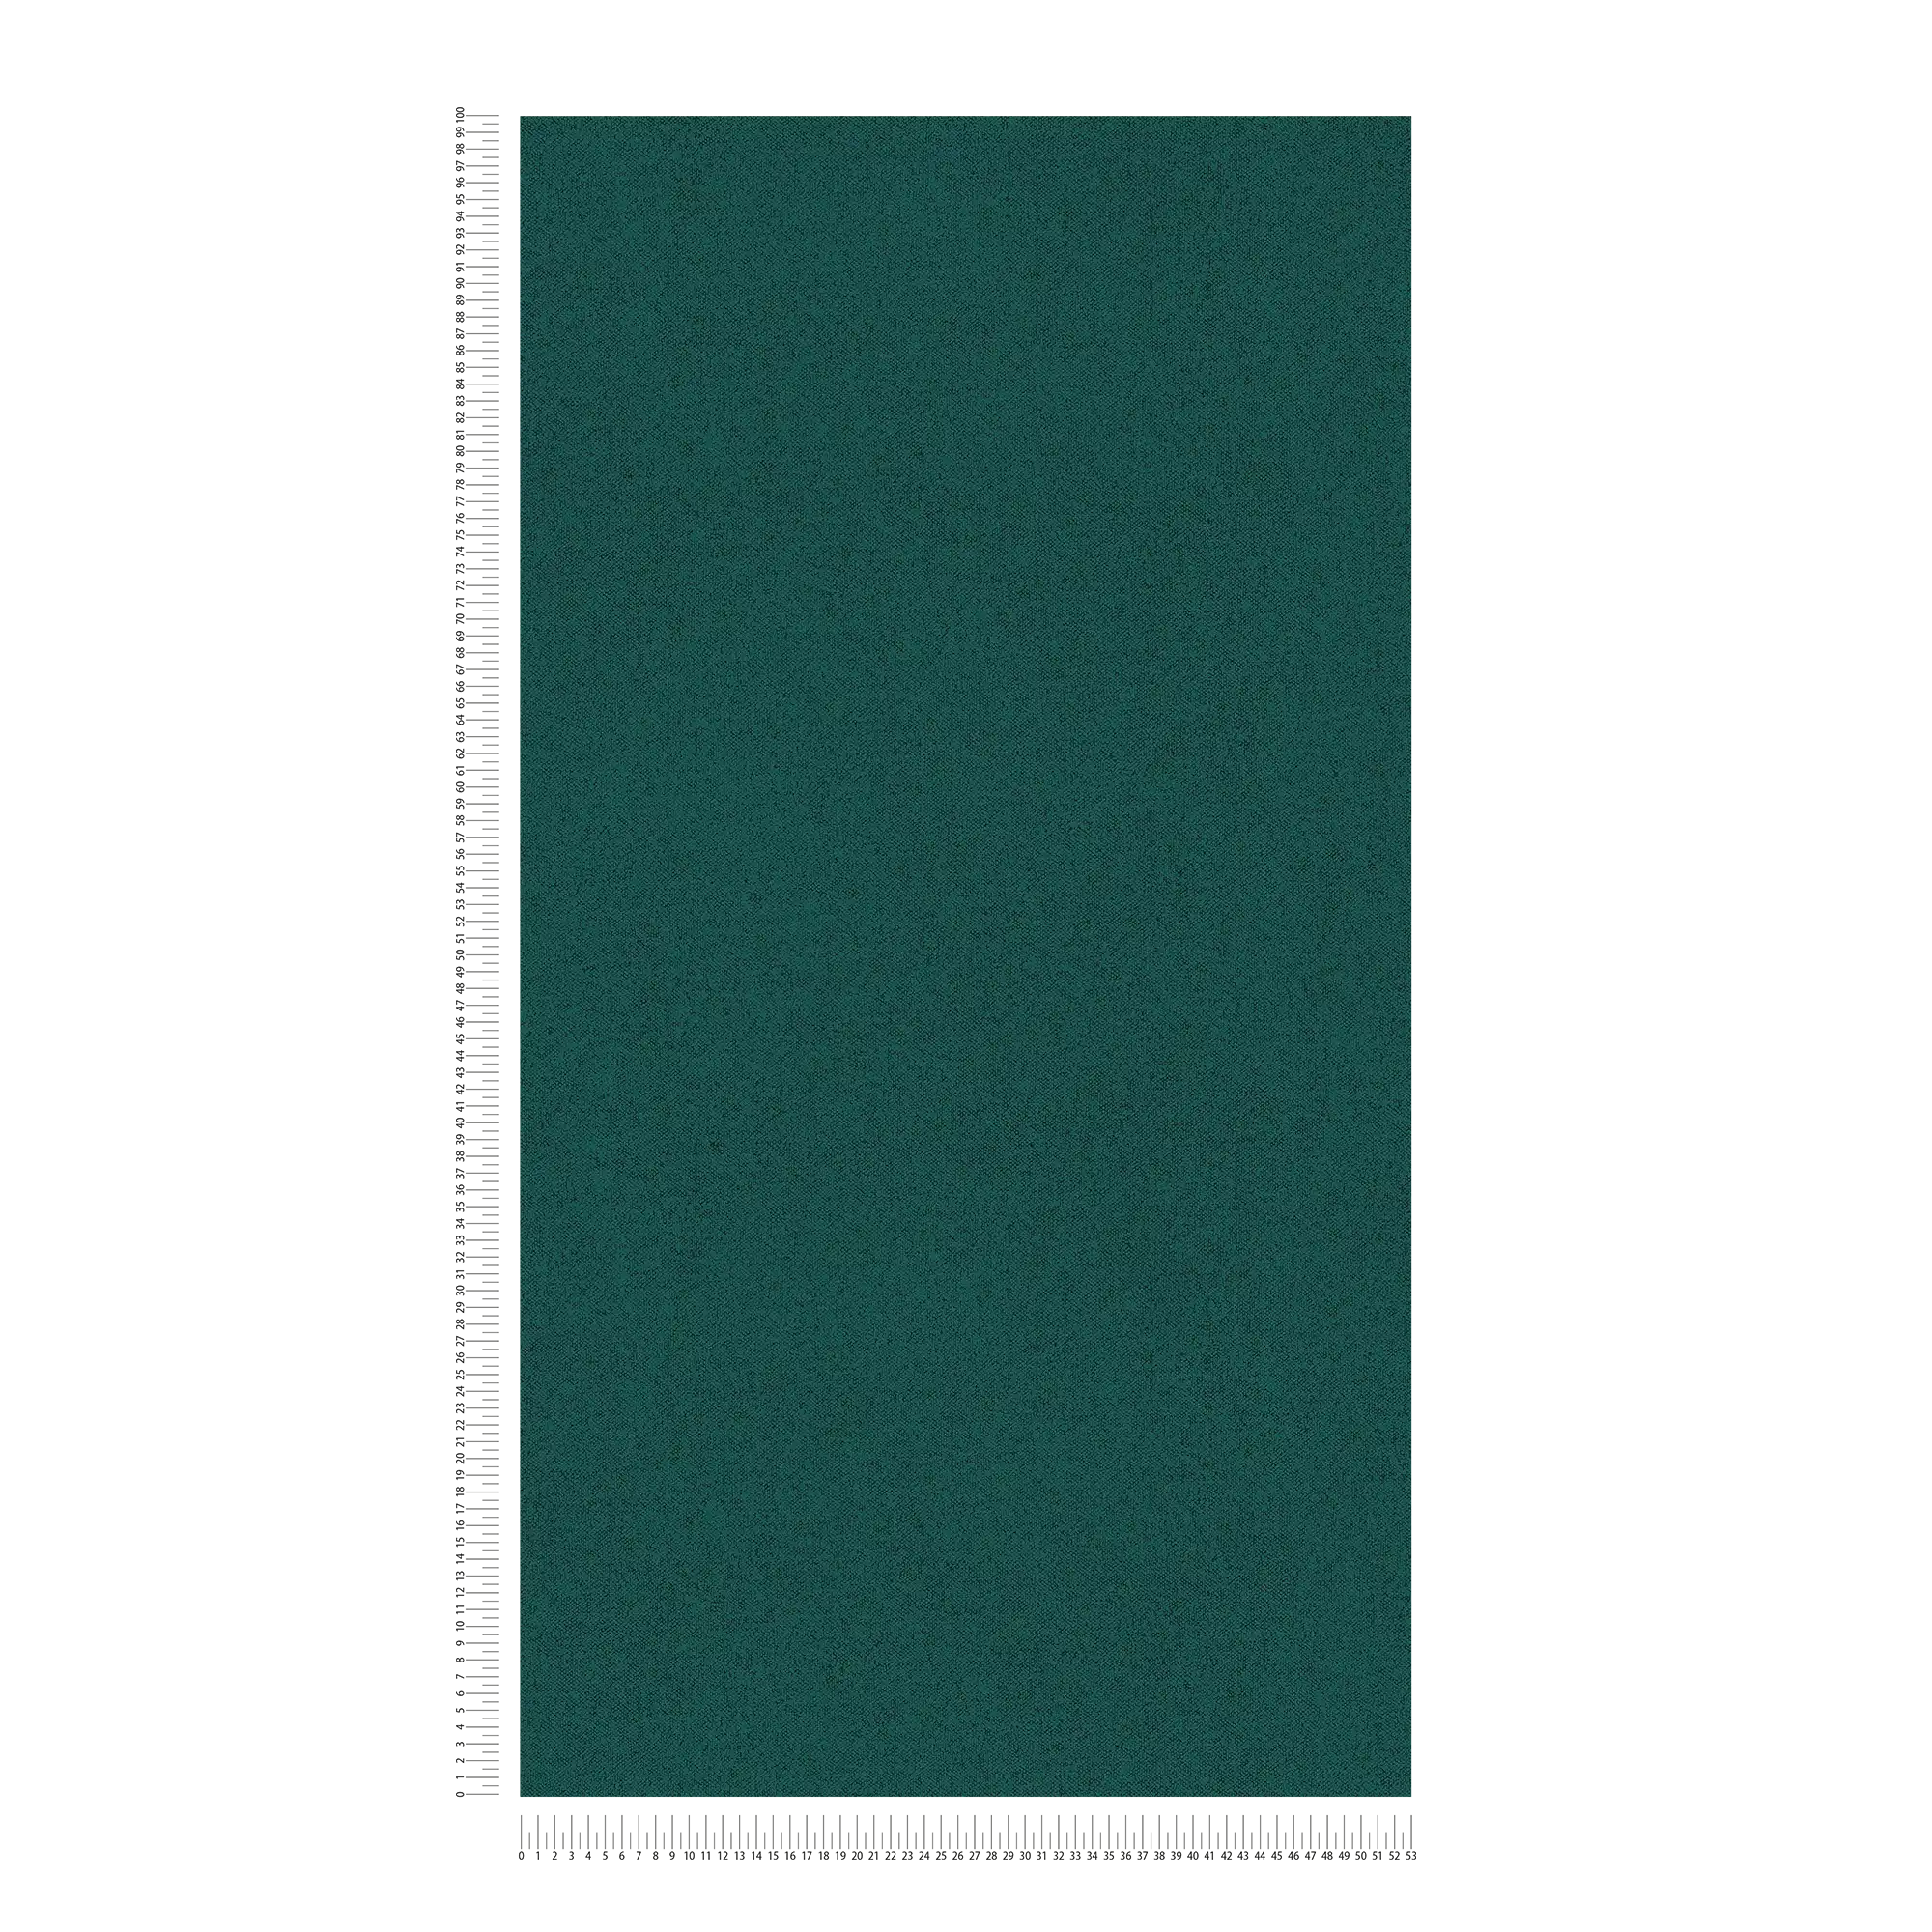             Papel pintado liso con textura de lino - verde
        